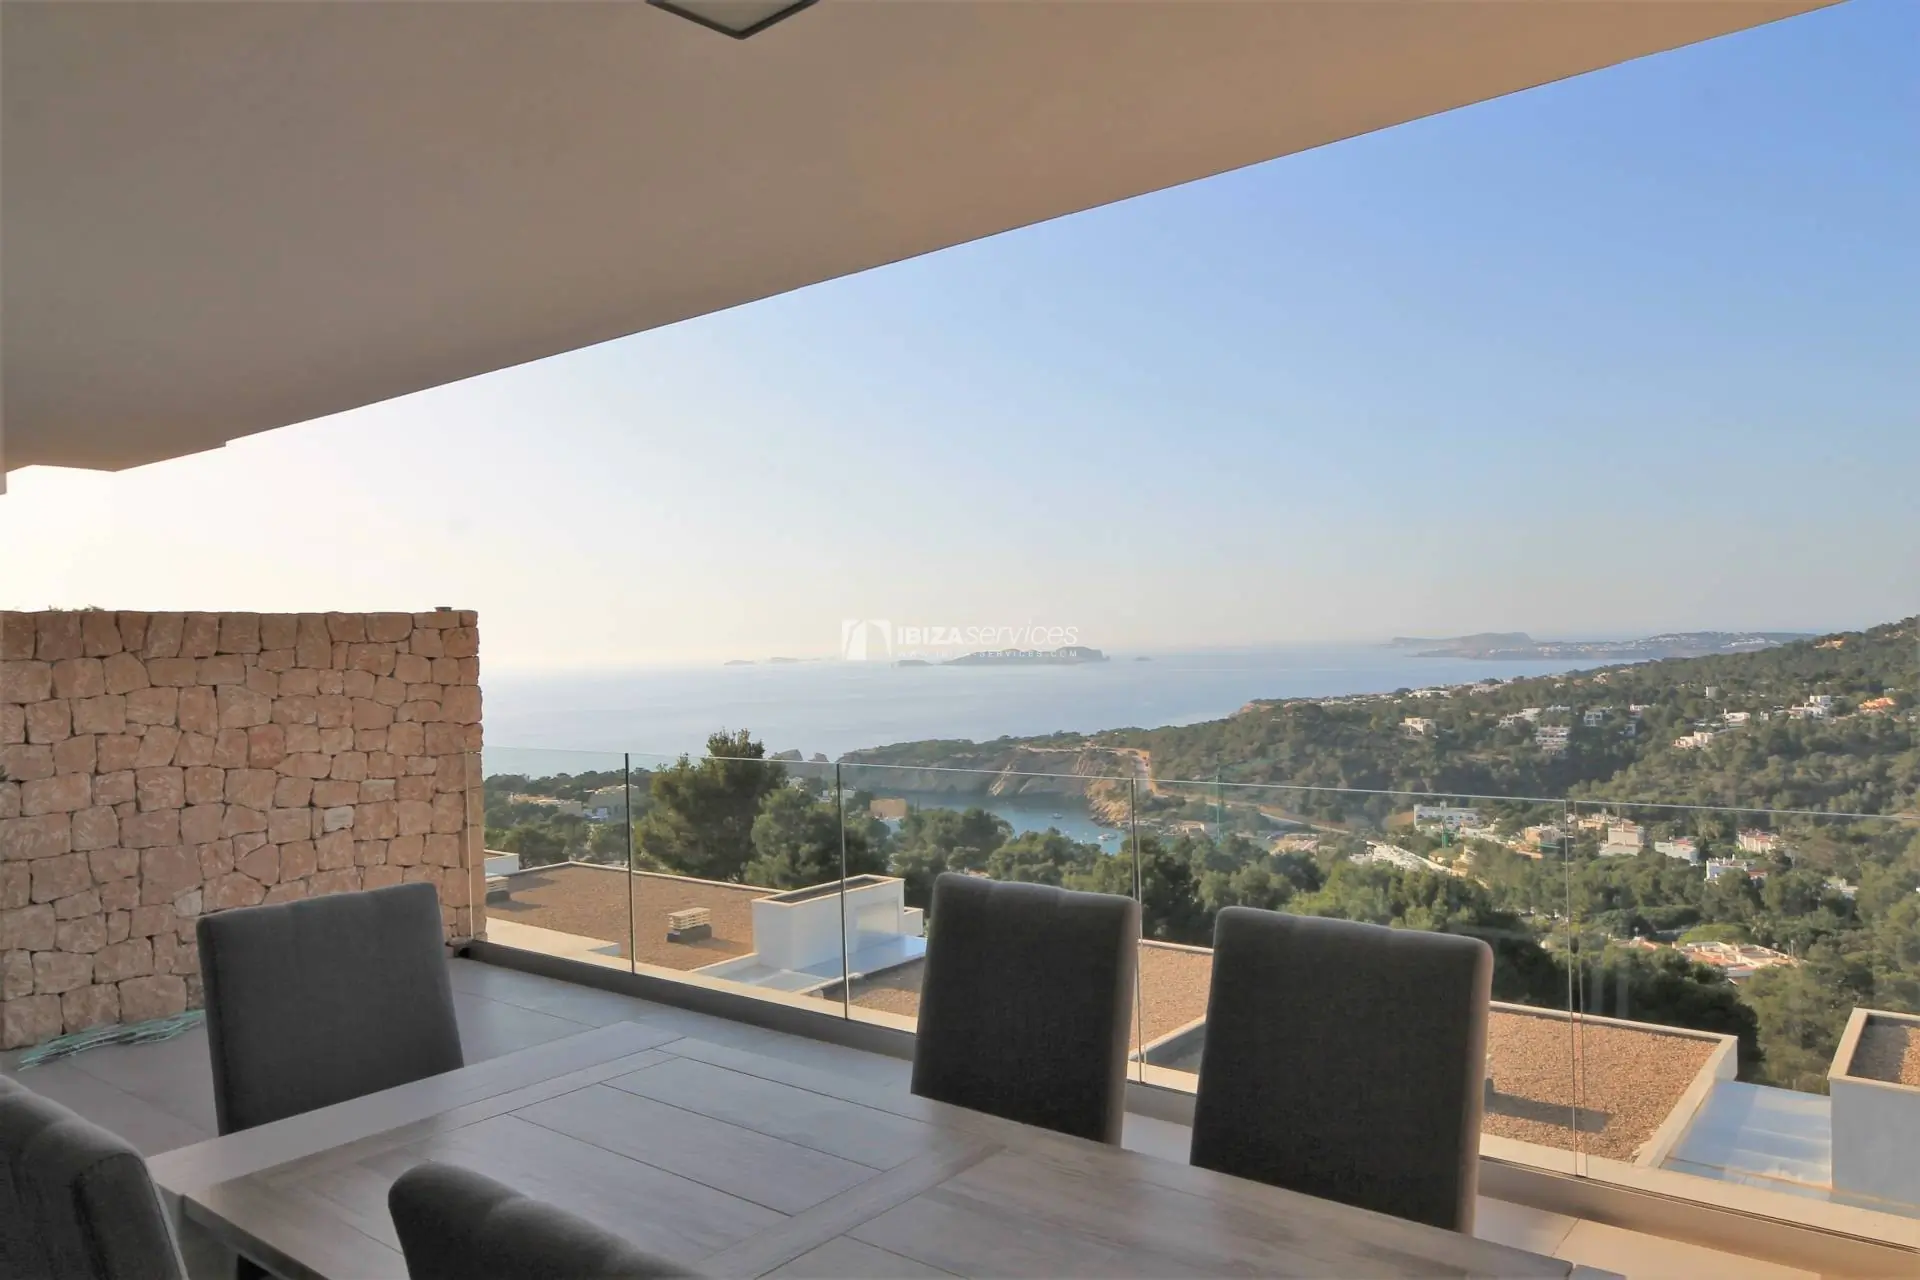 Duplex-Penthouse mit fantastischem Meerblick in Cala Vadella zu verkaufen